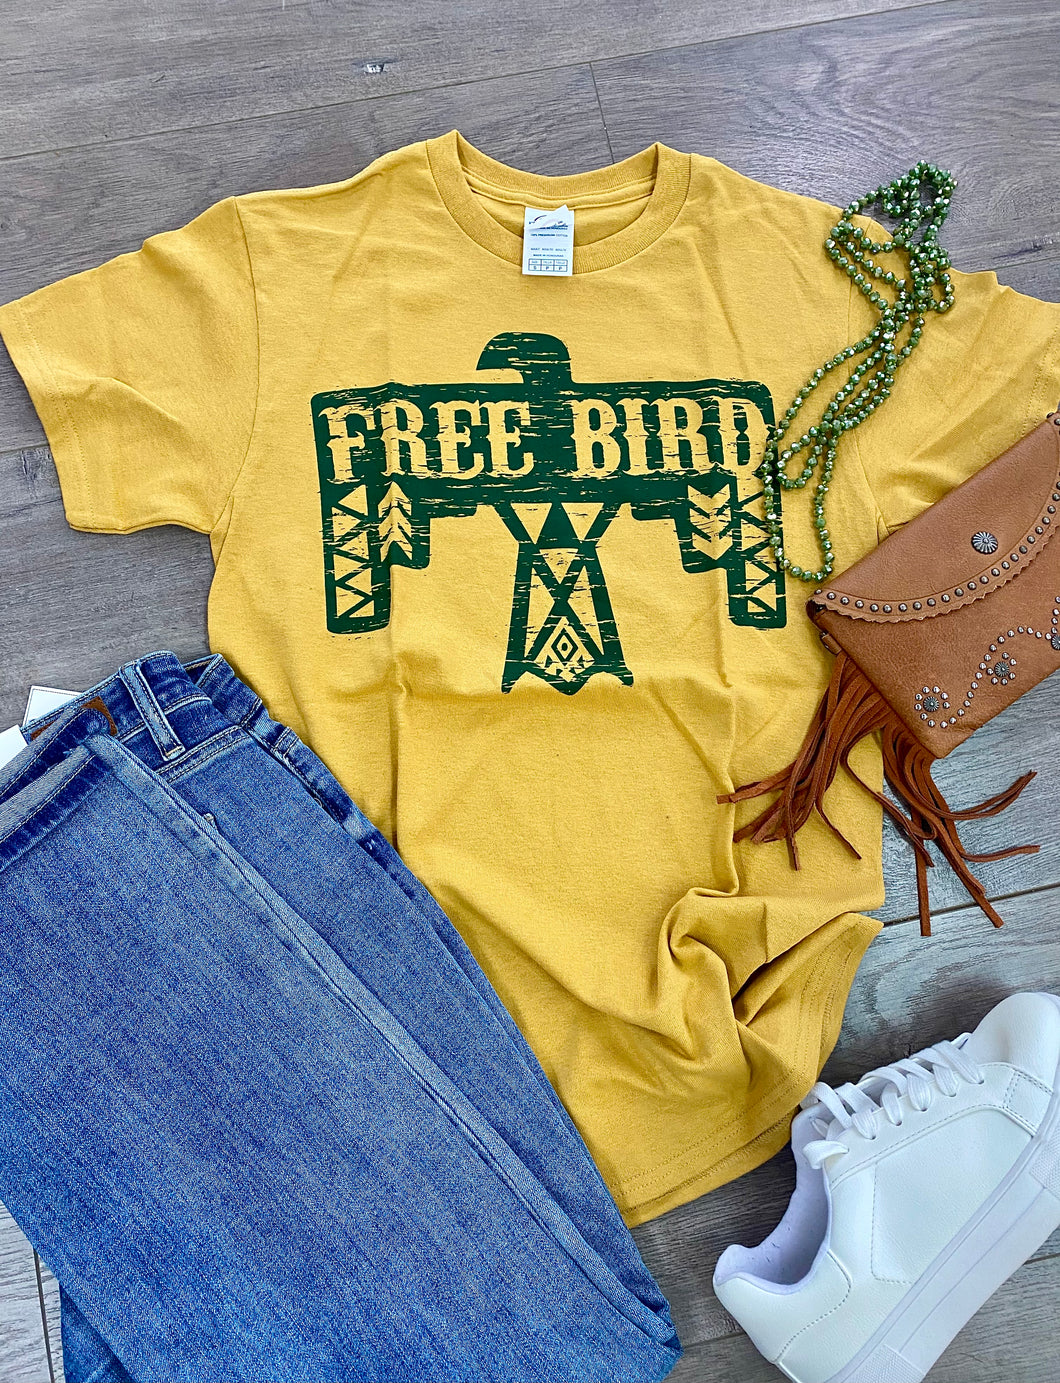 Free Bird Thunderbird Tee